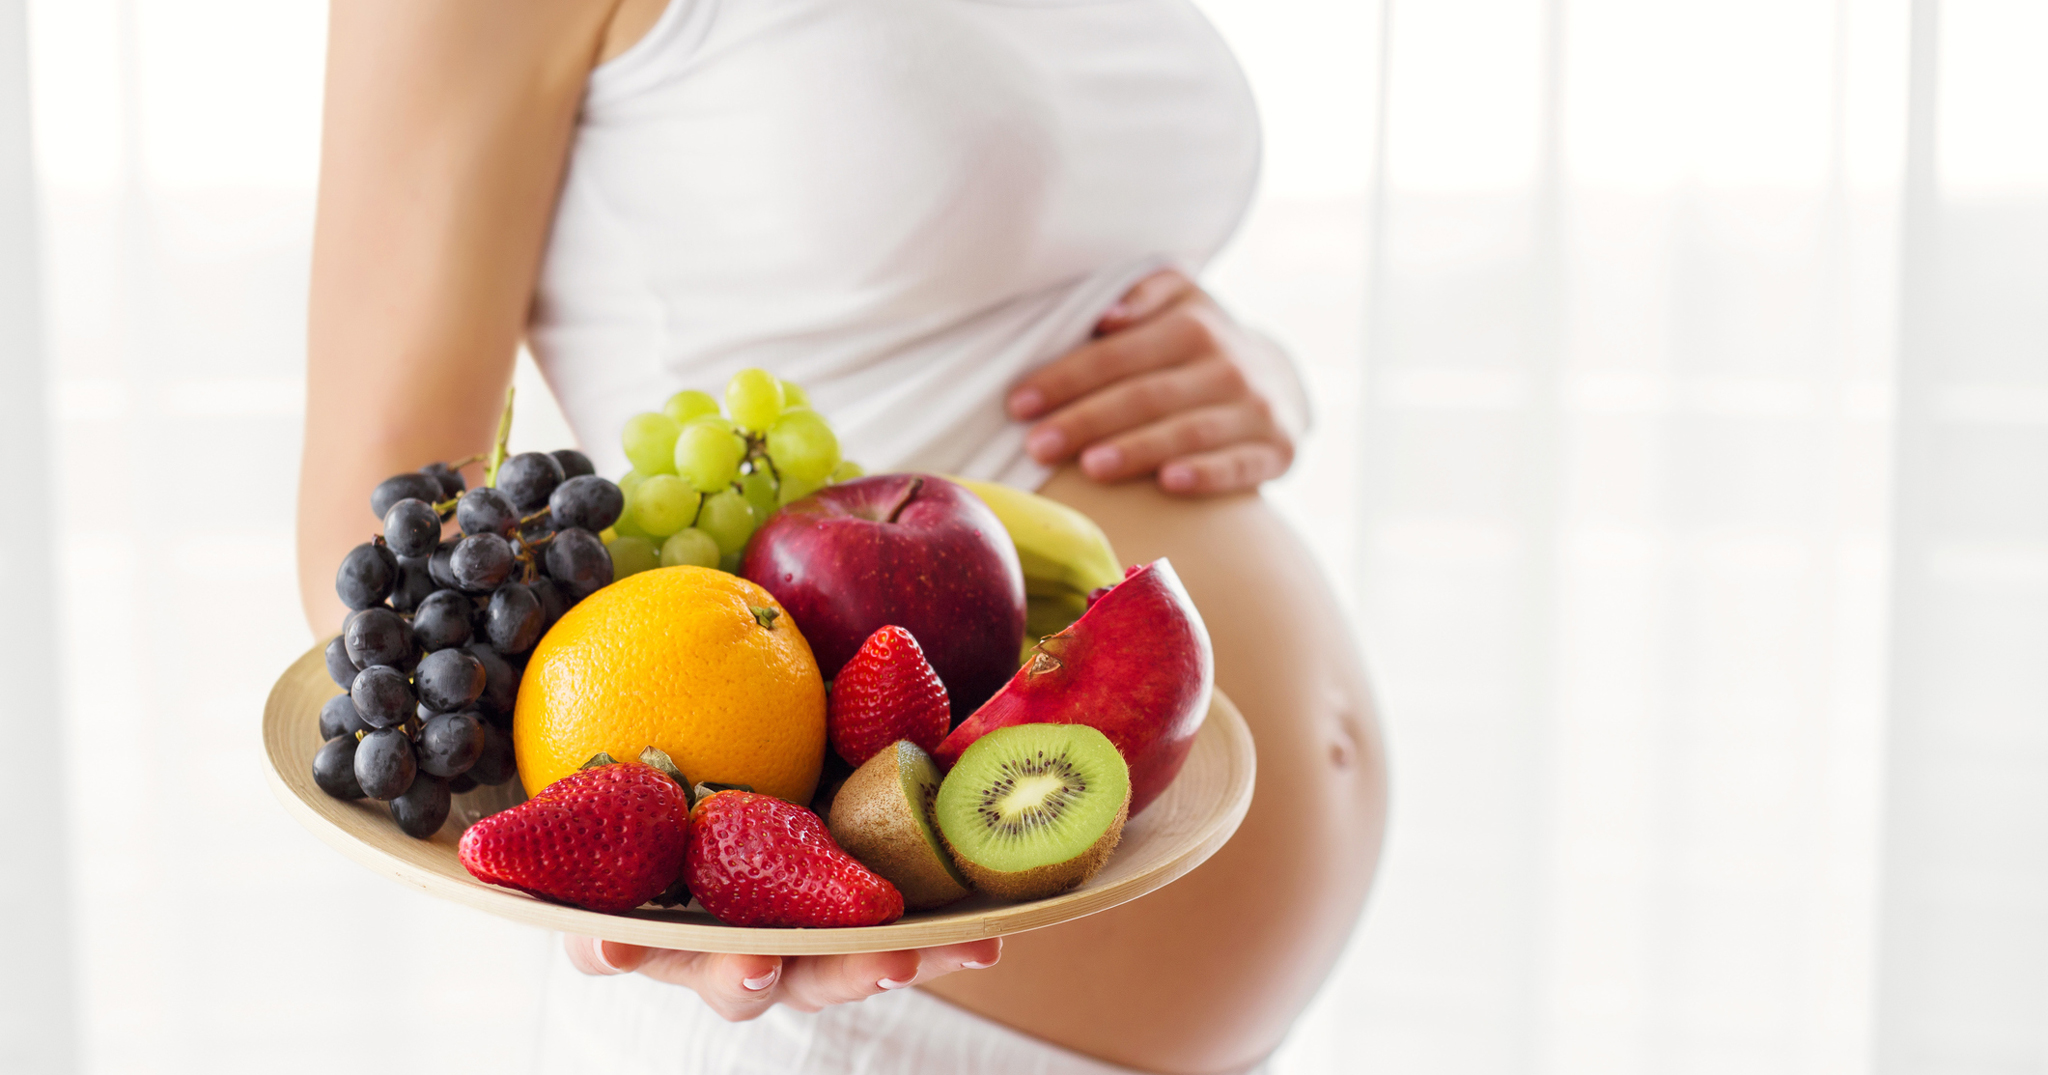 [Khoa học] Ăn trái cây khi mang thai có thể giúp tăng trí thông minh của bé